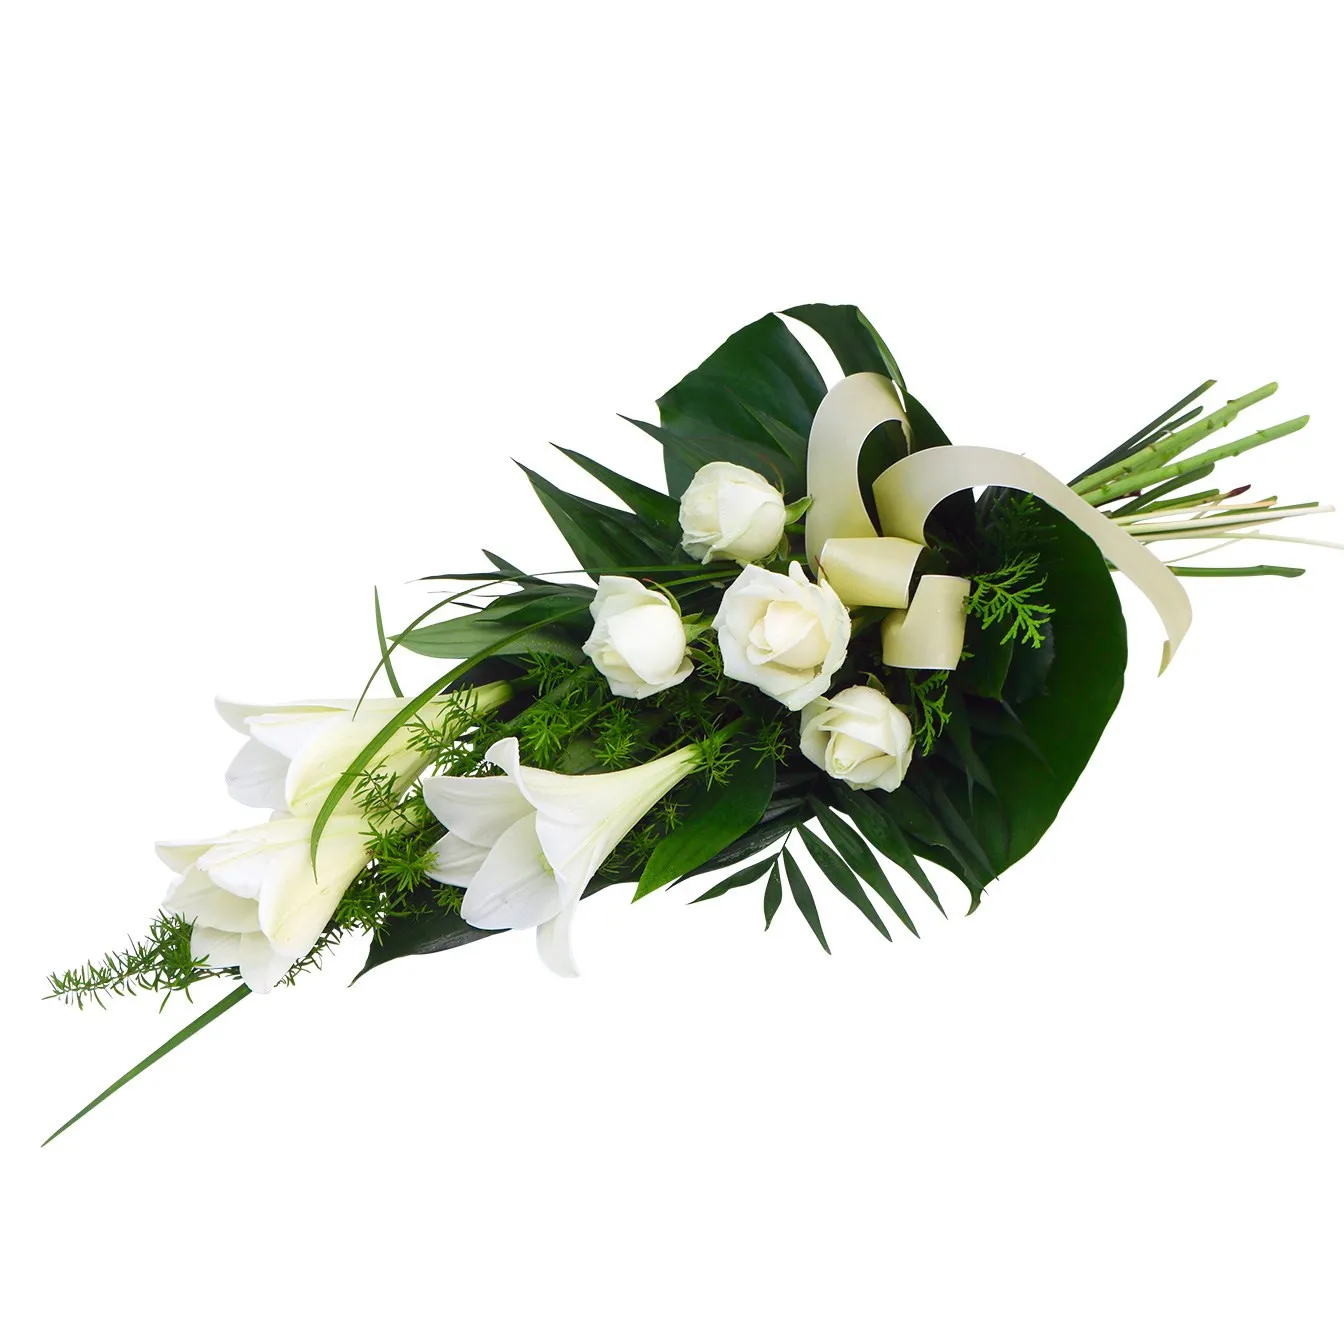 Biało - zielony pogrzebowy bukiet - Finlandia